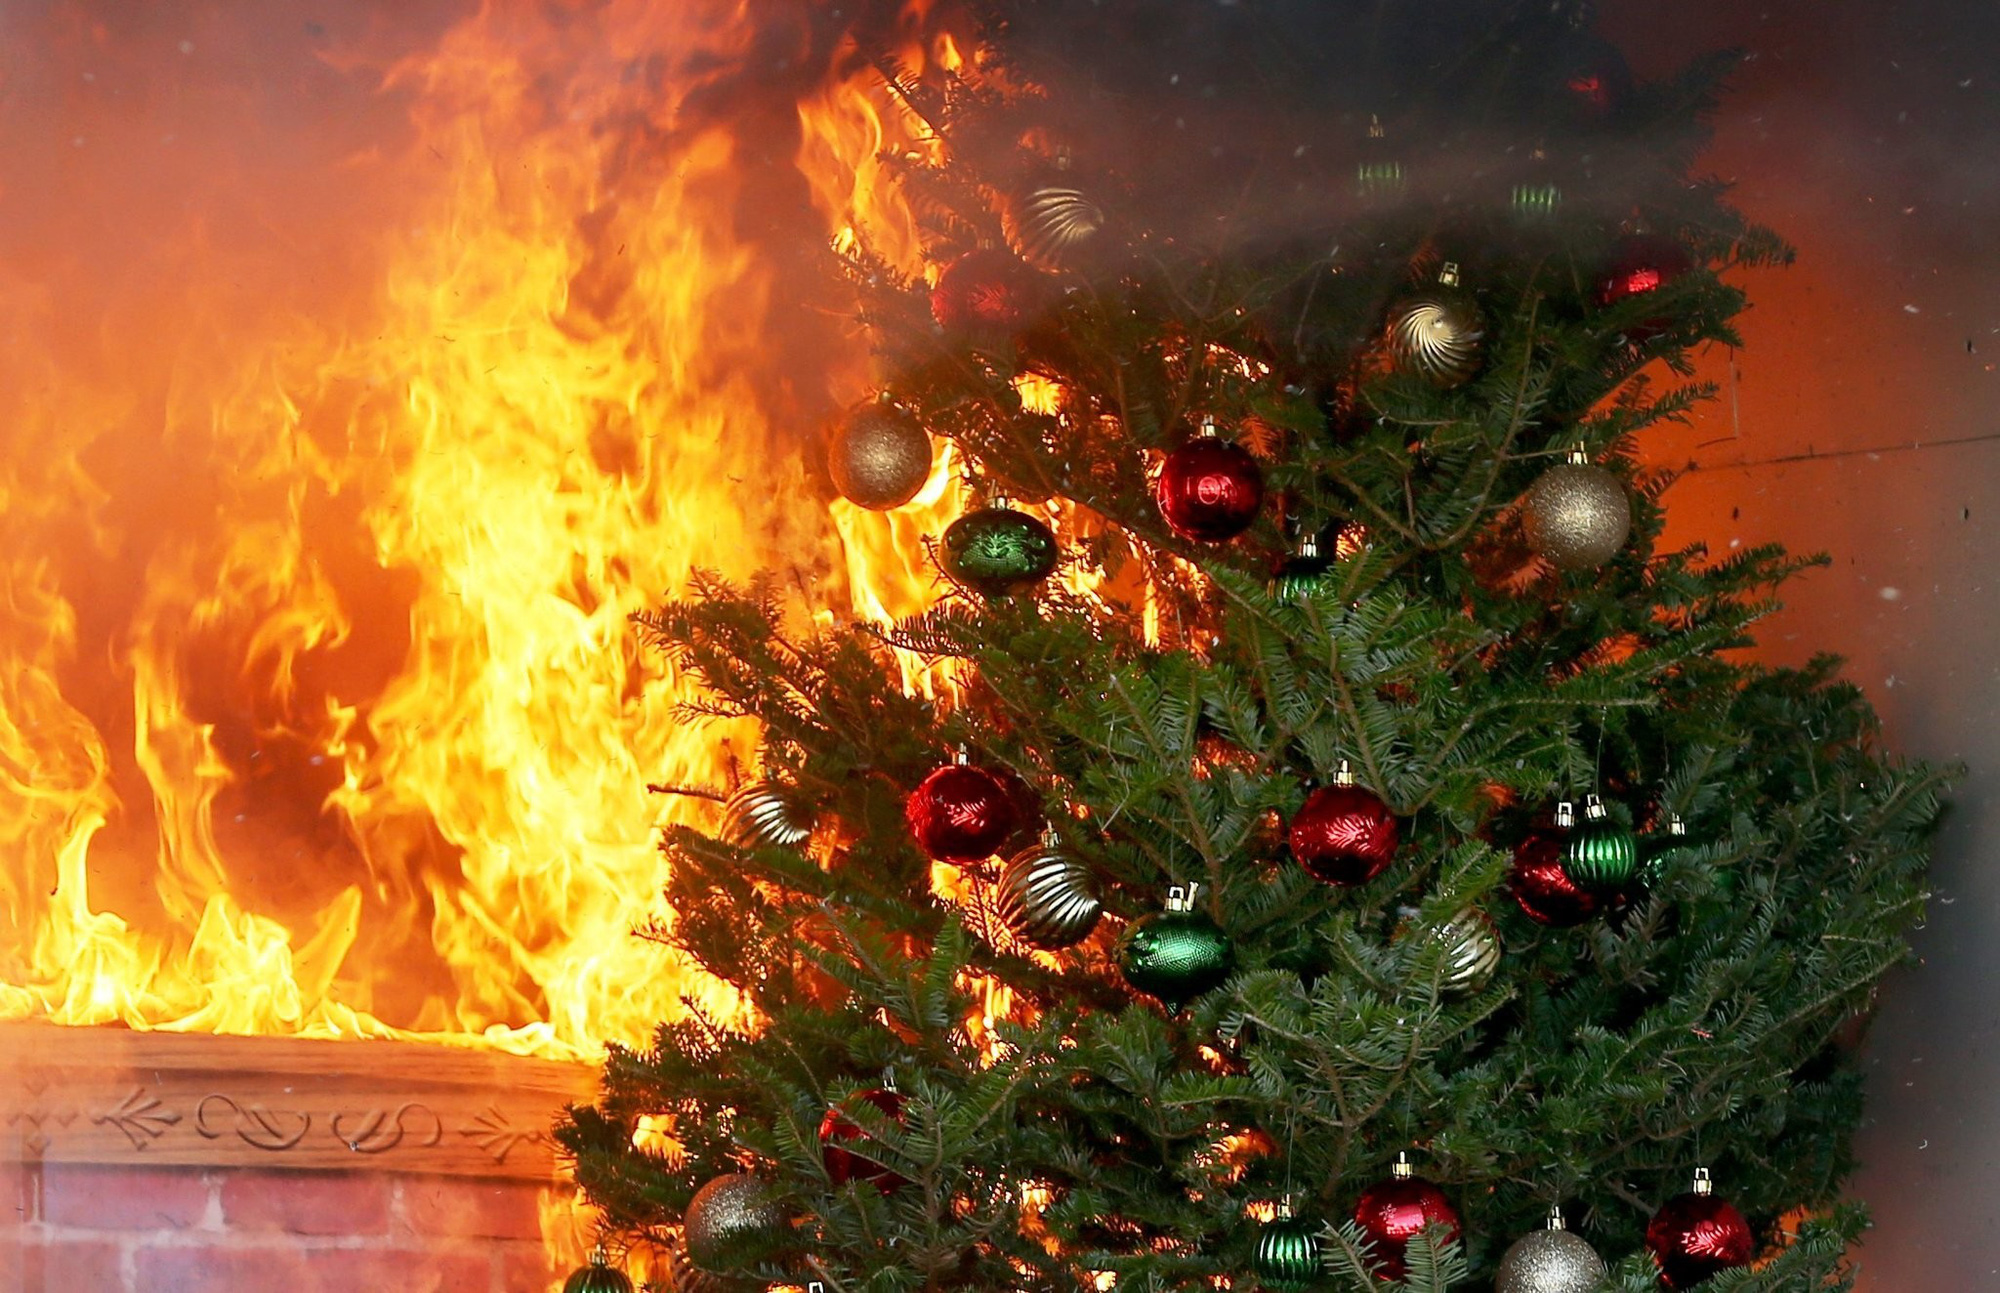 Cây thông Noel ngùn ngụt bốc cháy, cảnh báo nguy cơ và cách phòng tránh trong gia đình mùa Noel đang tới - Ảnh 2.